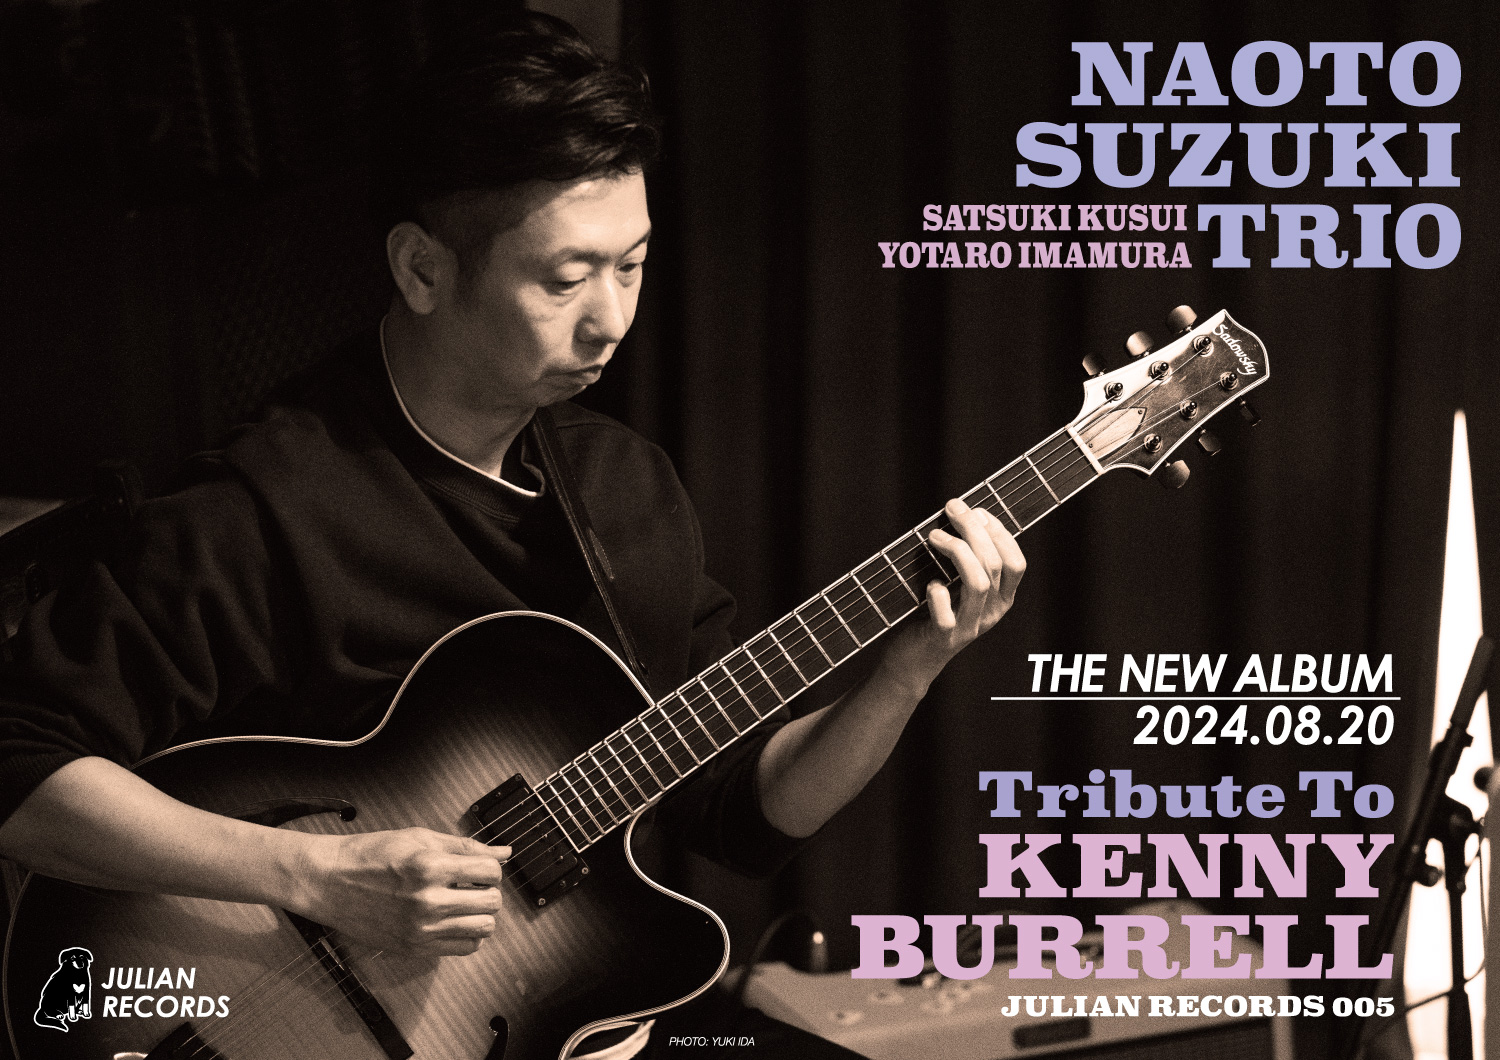 TRIBUTE TO KENNY BURRELL - Naoto Suzuki Trio